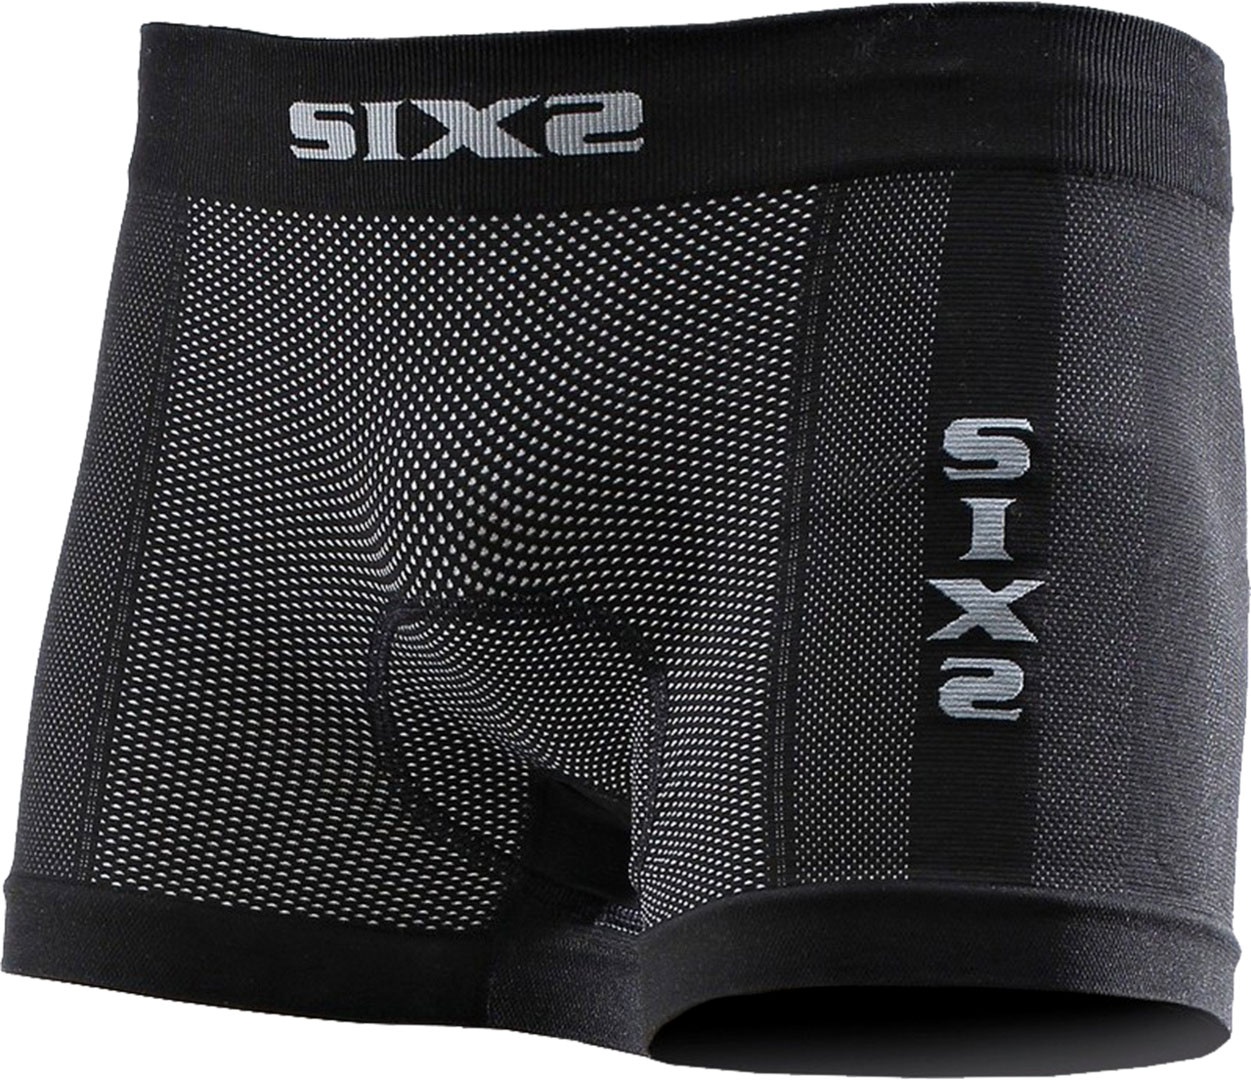 Sixs BOX2, caleçon unisexe - Noir - XL/XXL